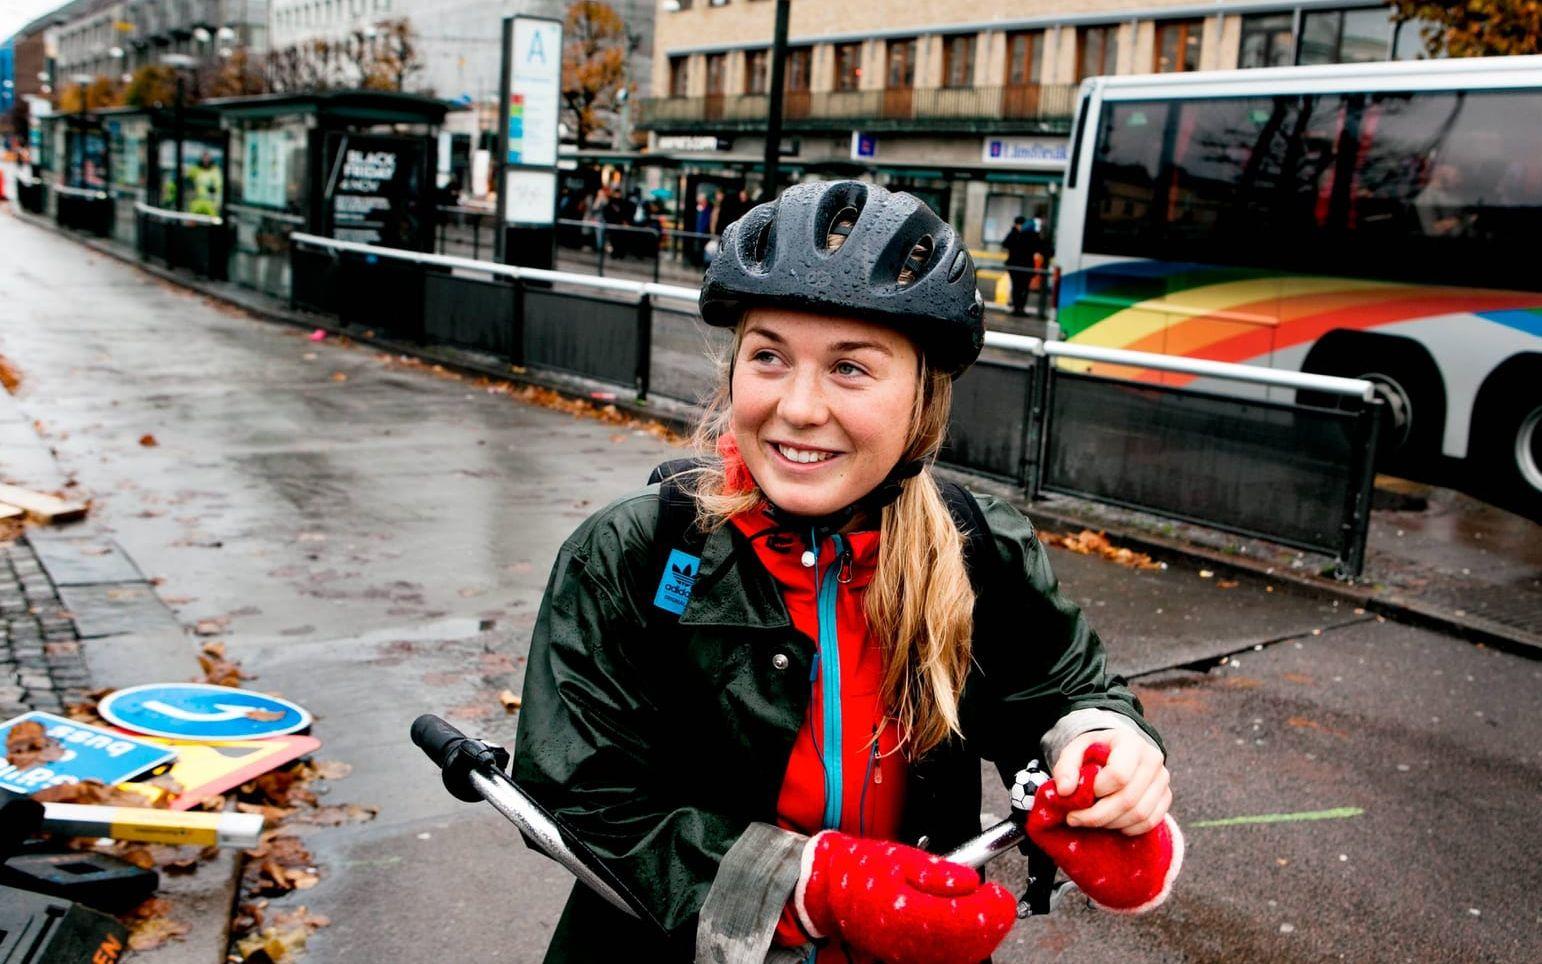 "Förutom här vid Brunnsparken är Göteborg en bra stad att cykla i", säger studenten Lisa Sörman som cykelpendlar mellan Backa och Chalmers.